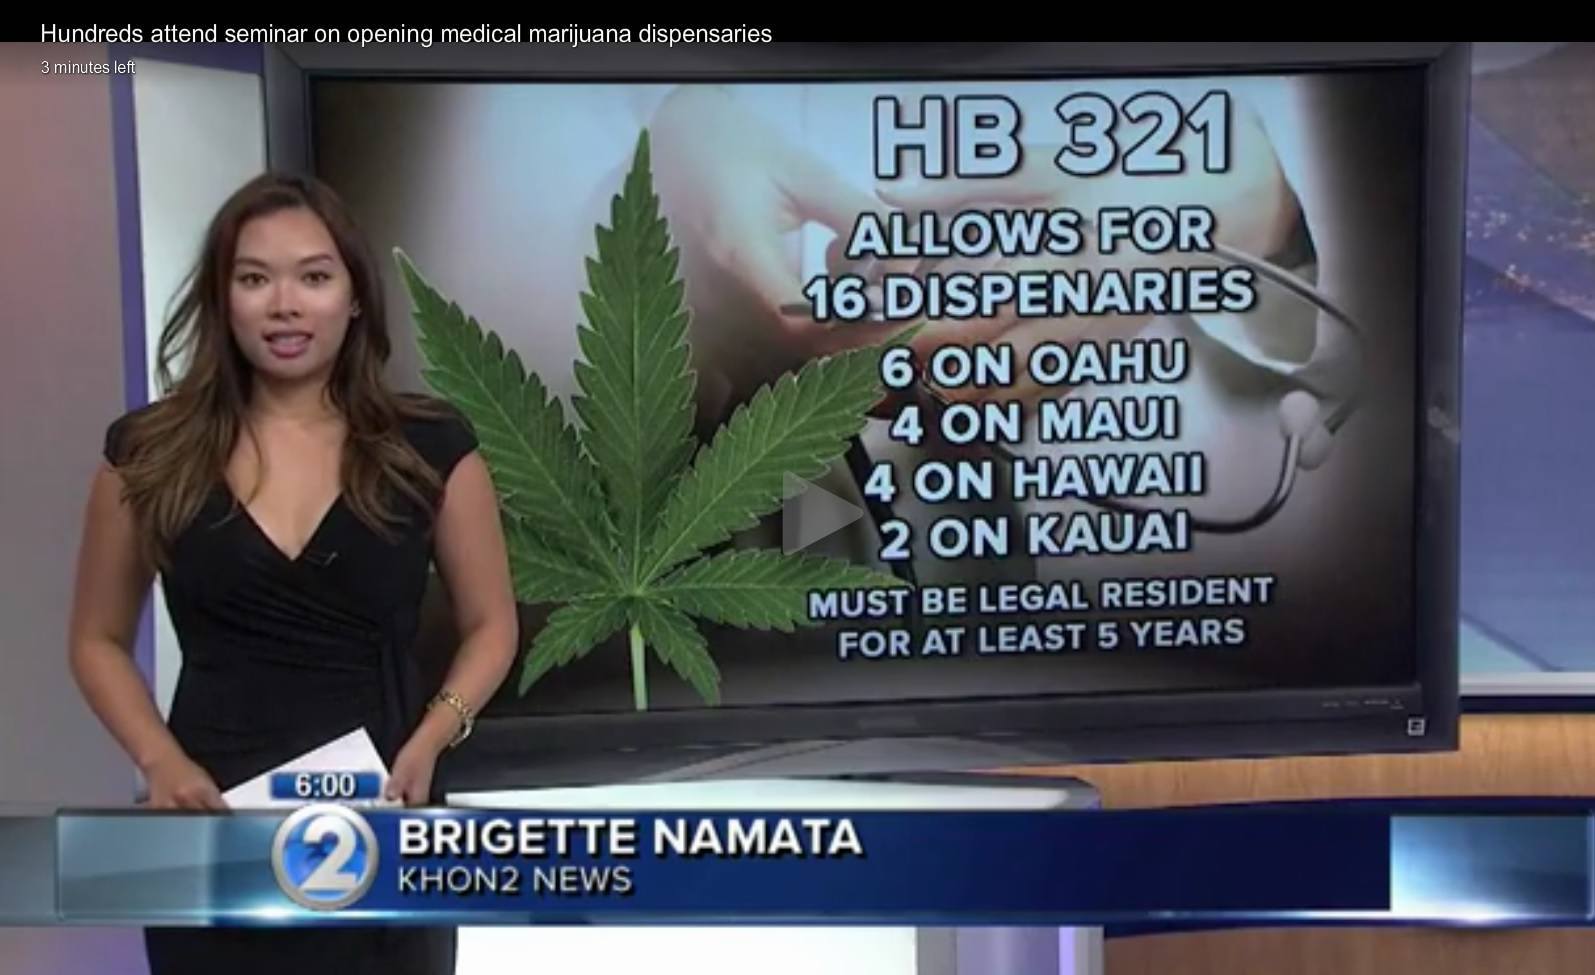 Screen shot image of Hawaii news about medical marijuana dispensaries opening